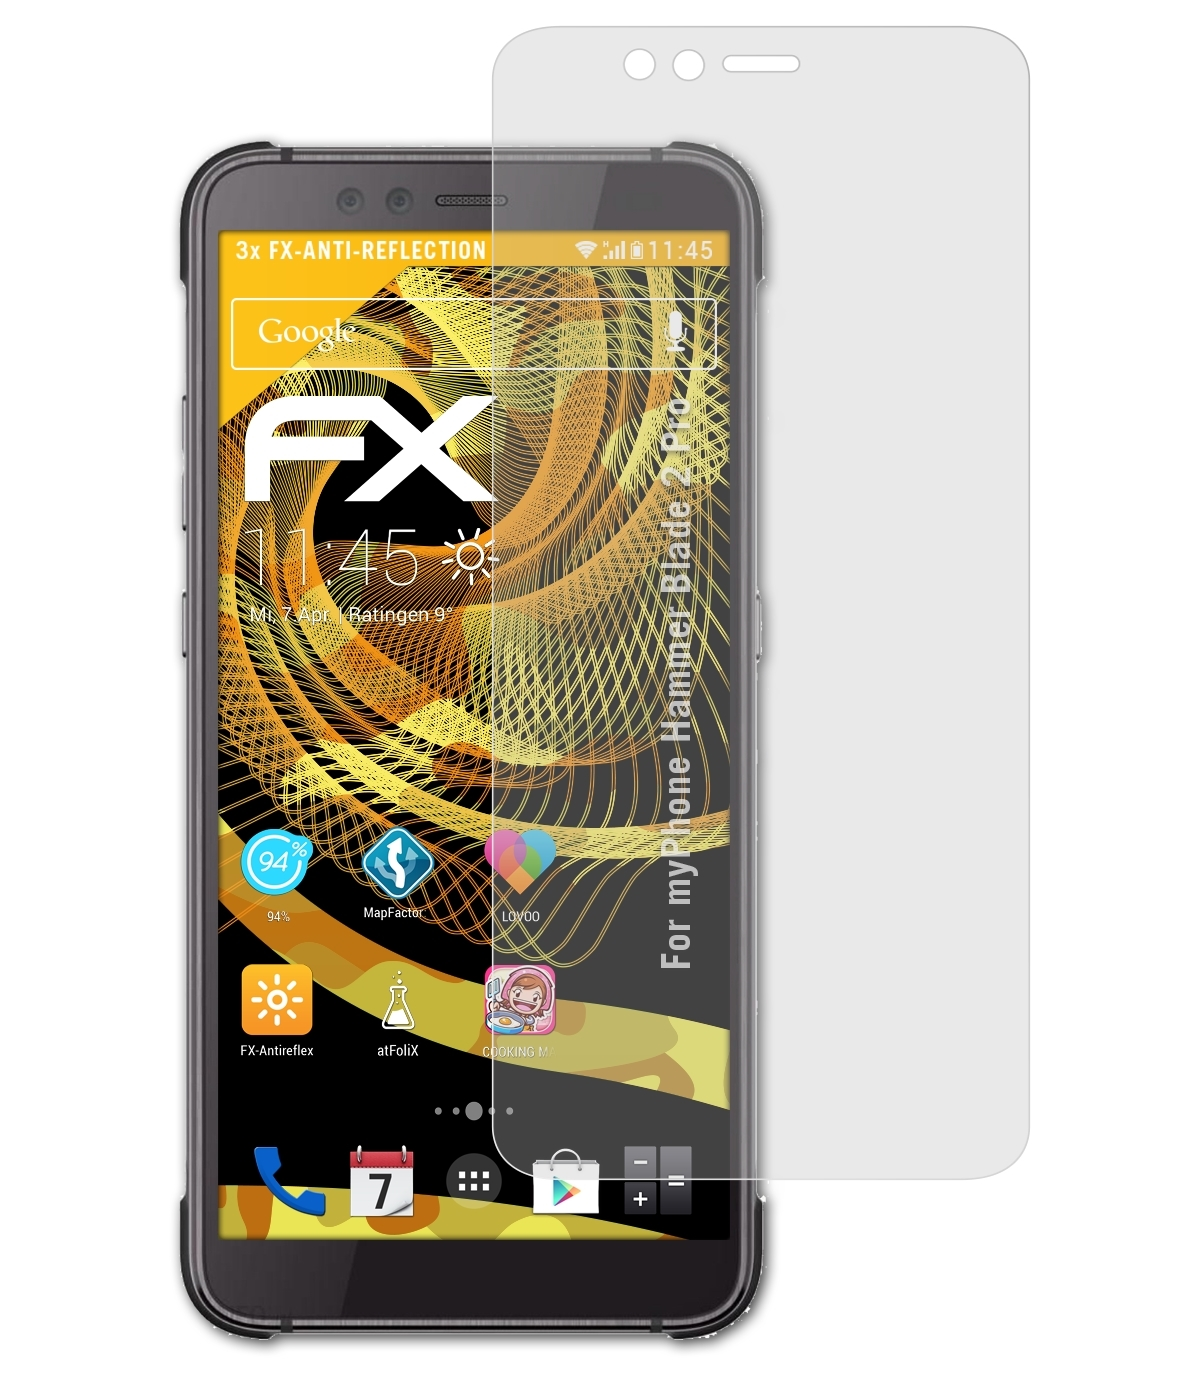 Displayschutz(für Pro) 3x FX-Antireflex 2 Blade myPhone ATFOLIX Hammer